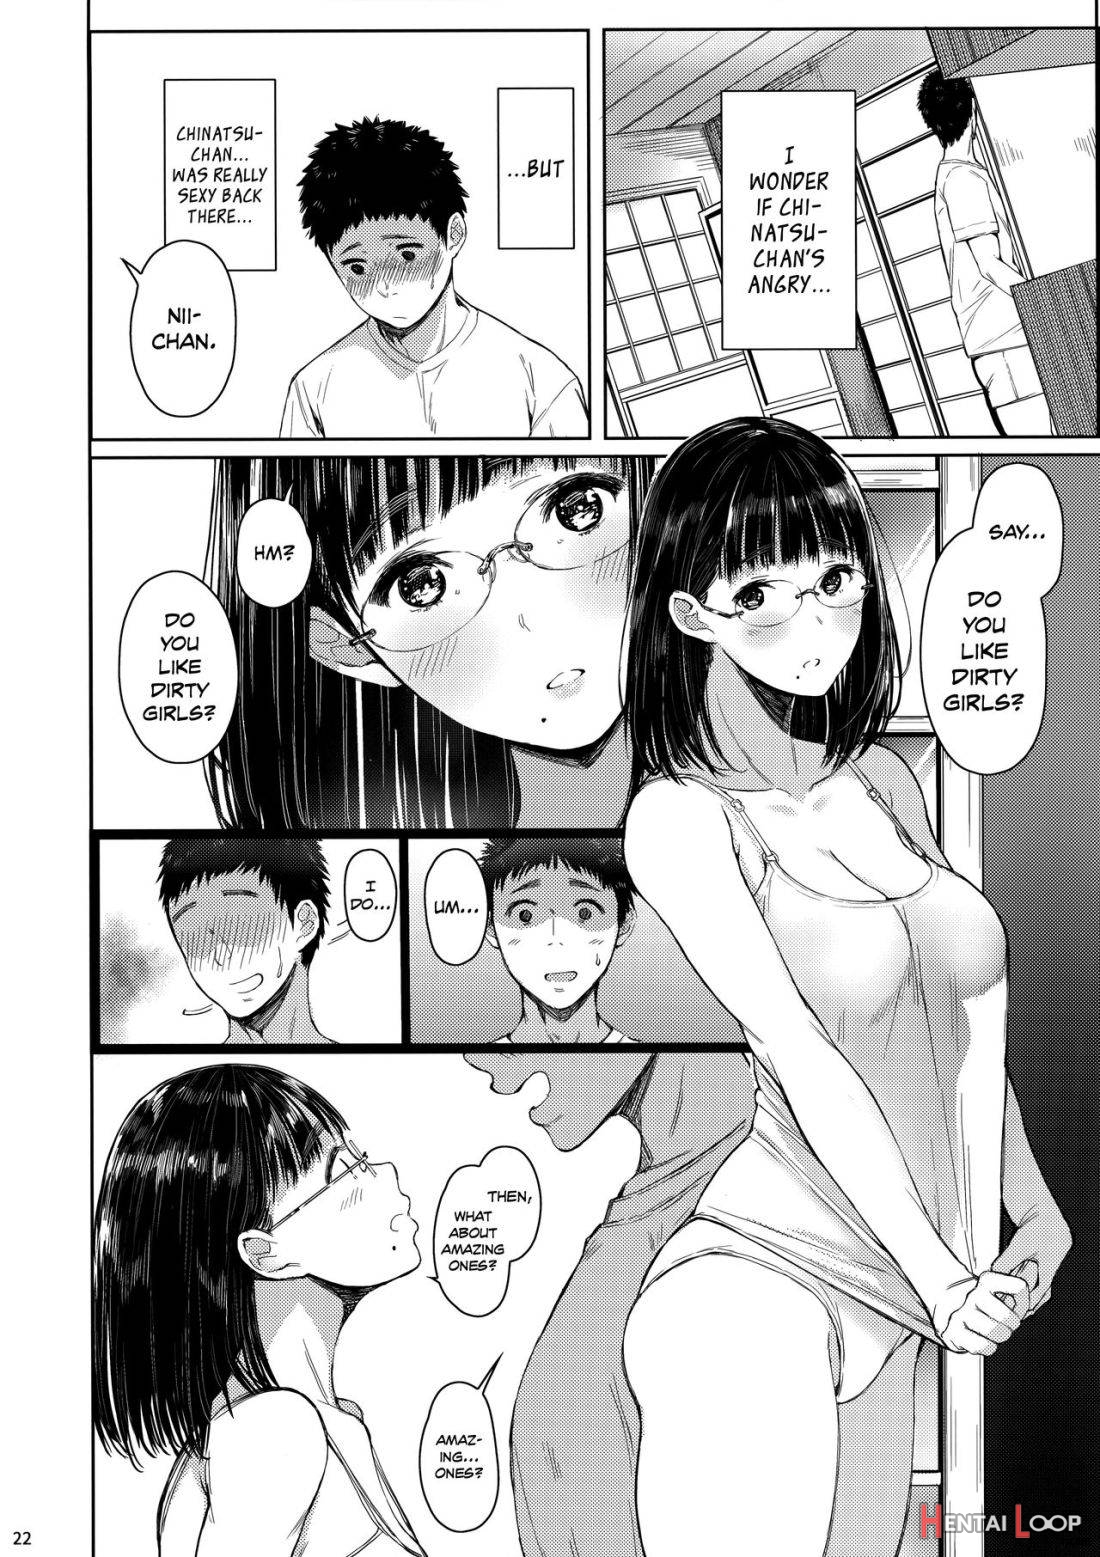 Tonari No Chinatsu-chan R 02 page 19